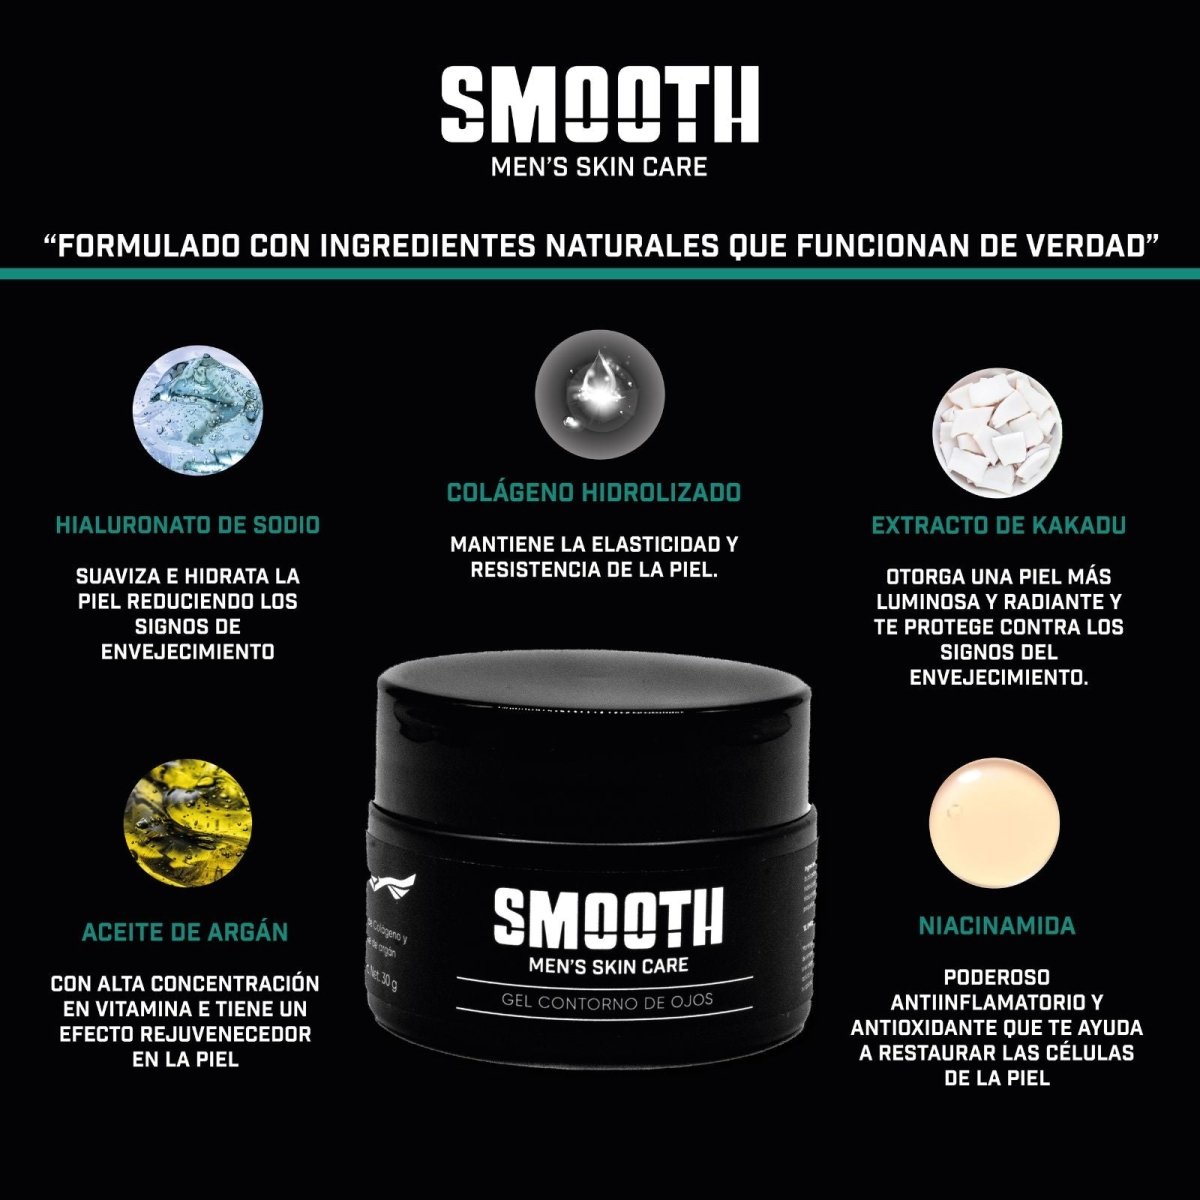 Kit Definitivo Smooth Con Bolsa | Piel Mixta/Grasa/Normal - Smoothmx